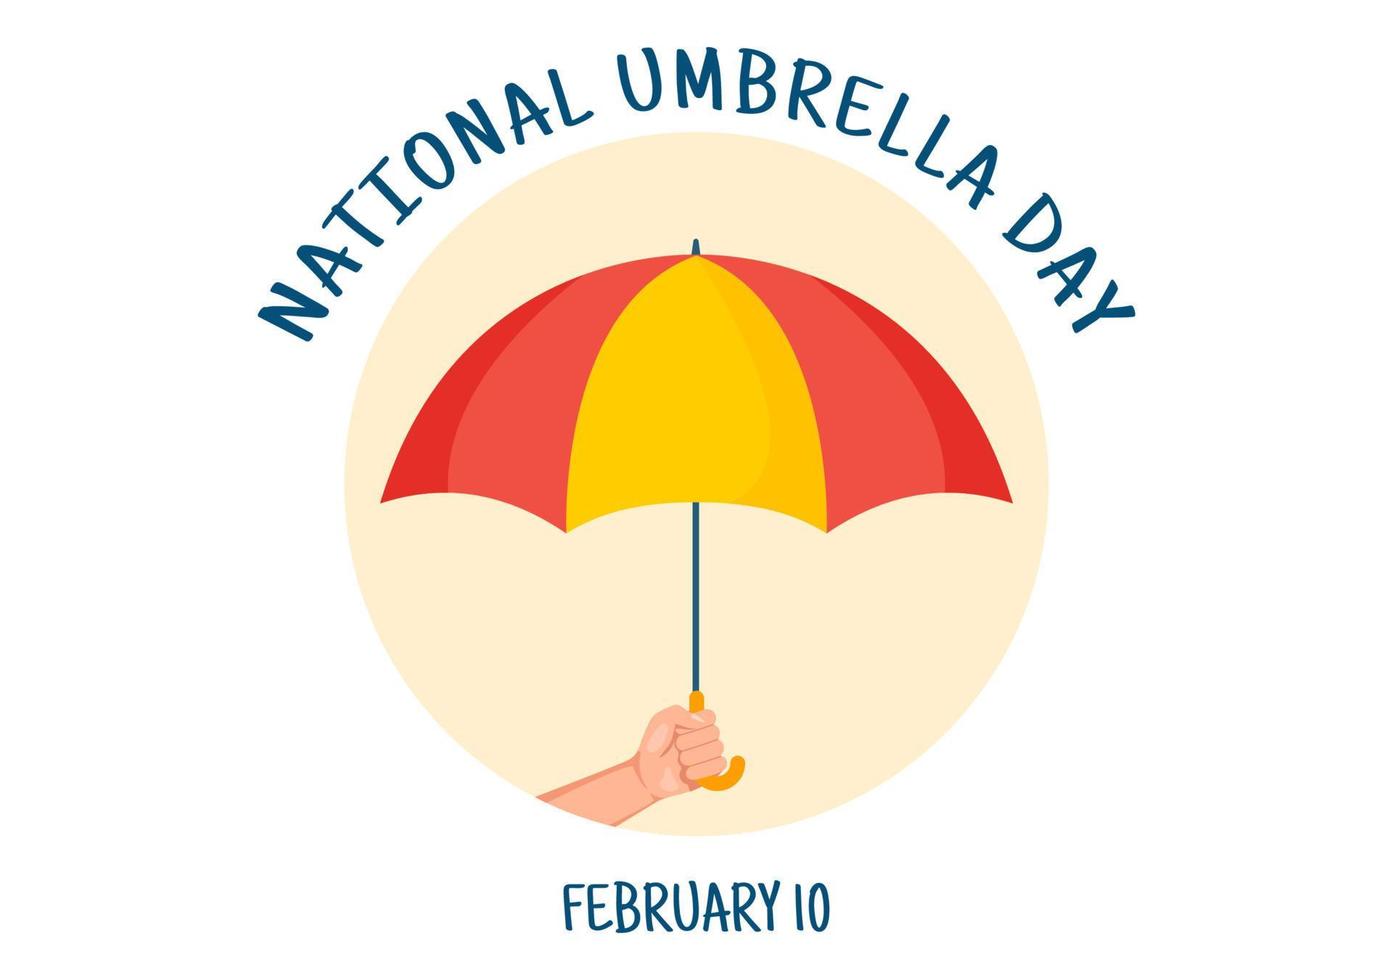 nationale feier des regenschirmtages am 10. februar, um uns vor regen und sonne in einer handgezeichneten schablonenillustration der flachen karikatur zu schützen vektor